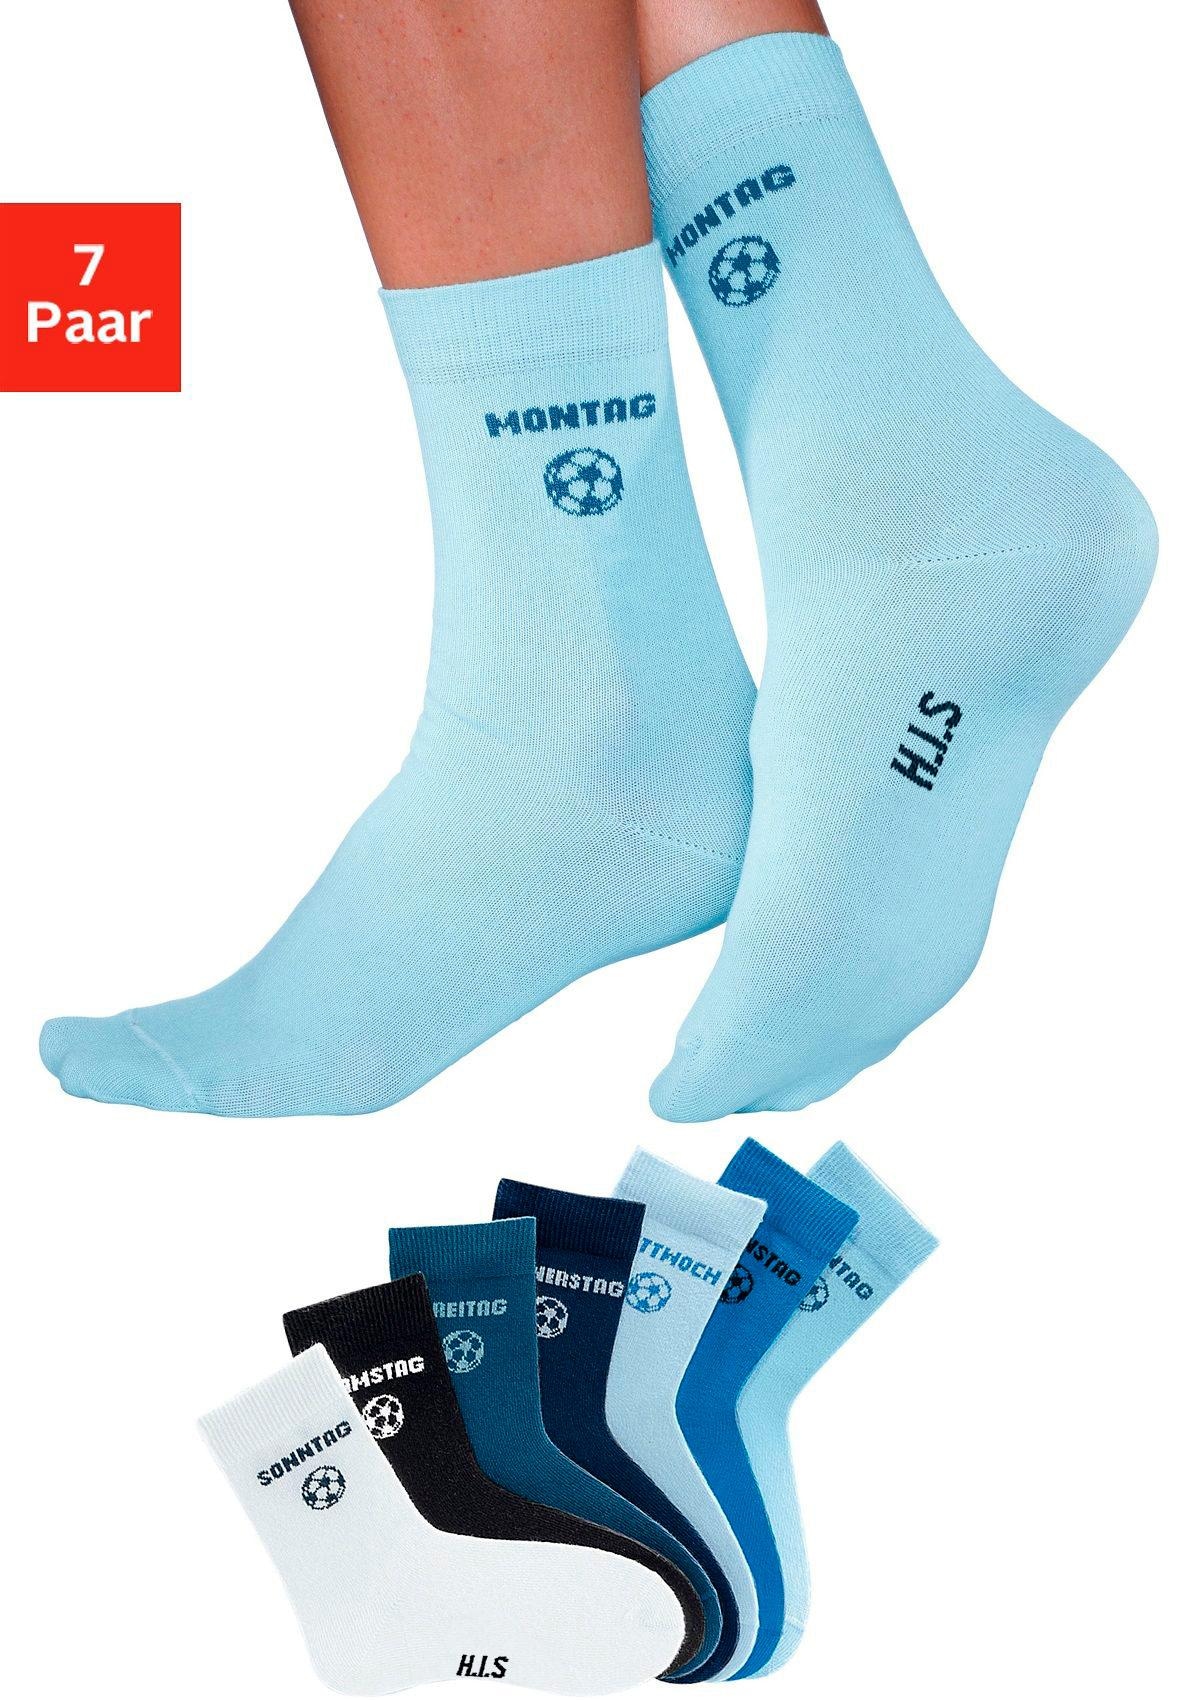 H.I.S Socken, (7 Paar), für Kinder mit Fußballmotiv bei OTTO